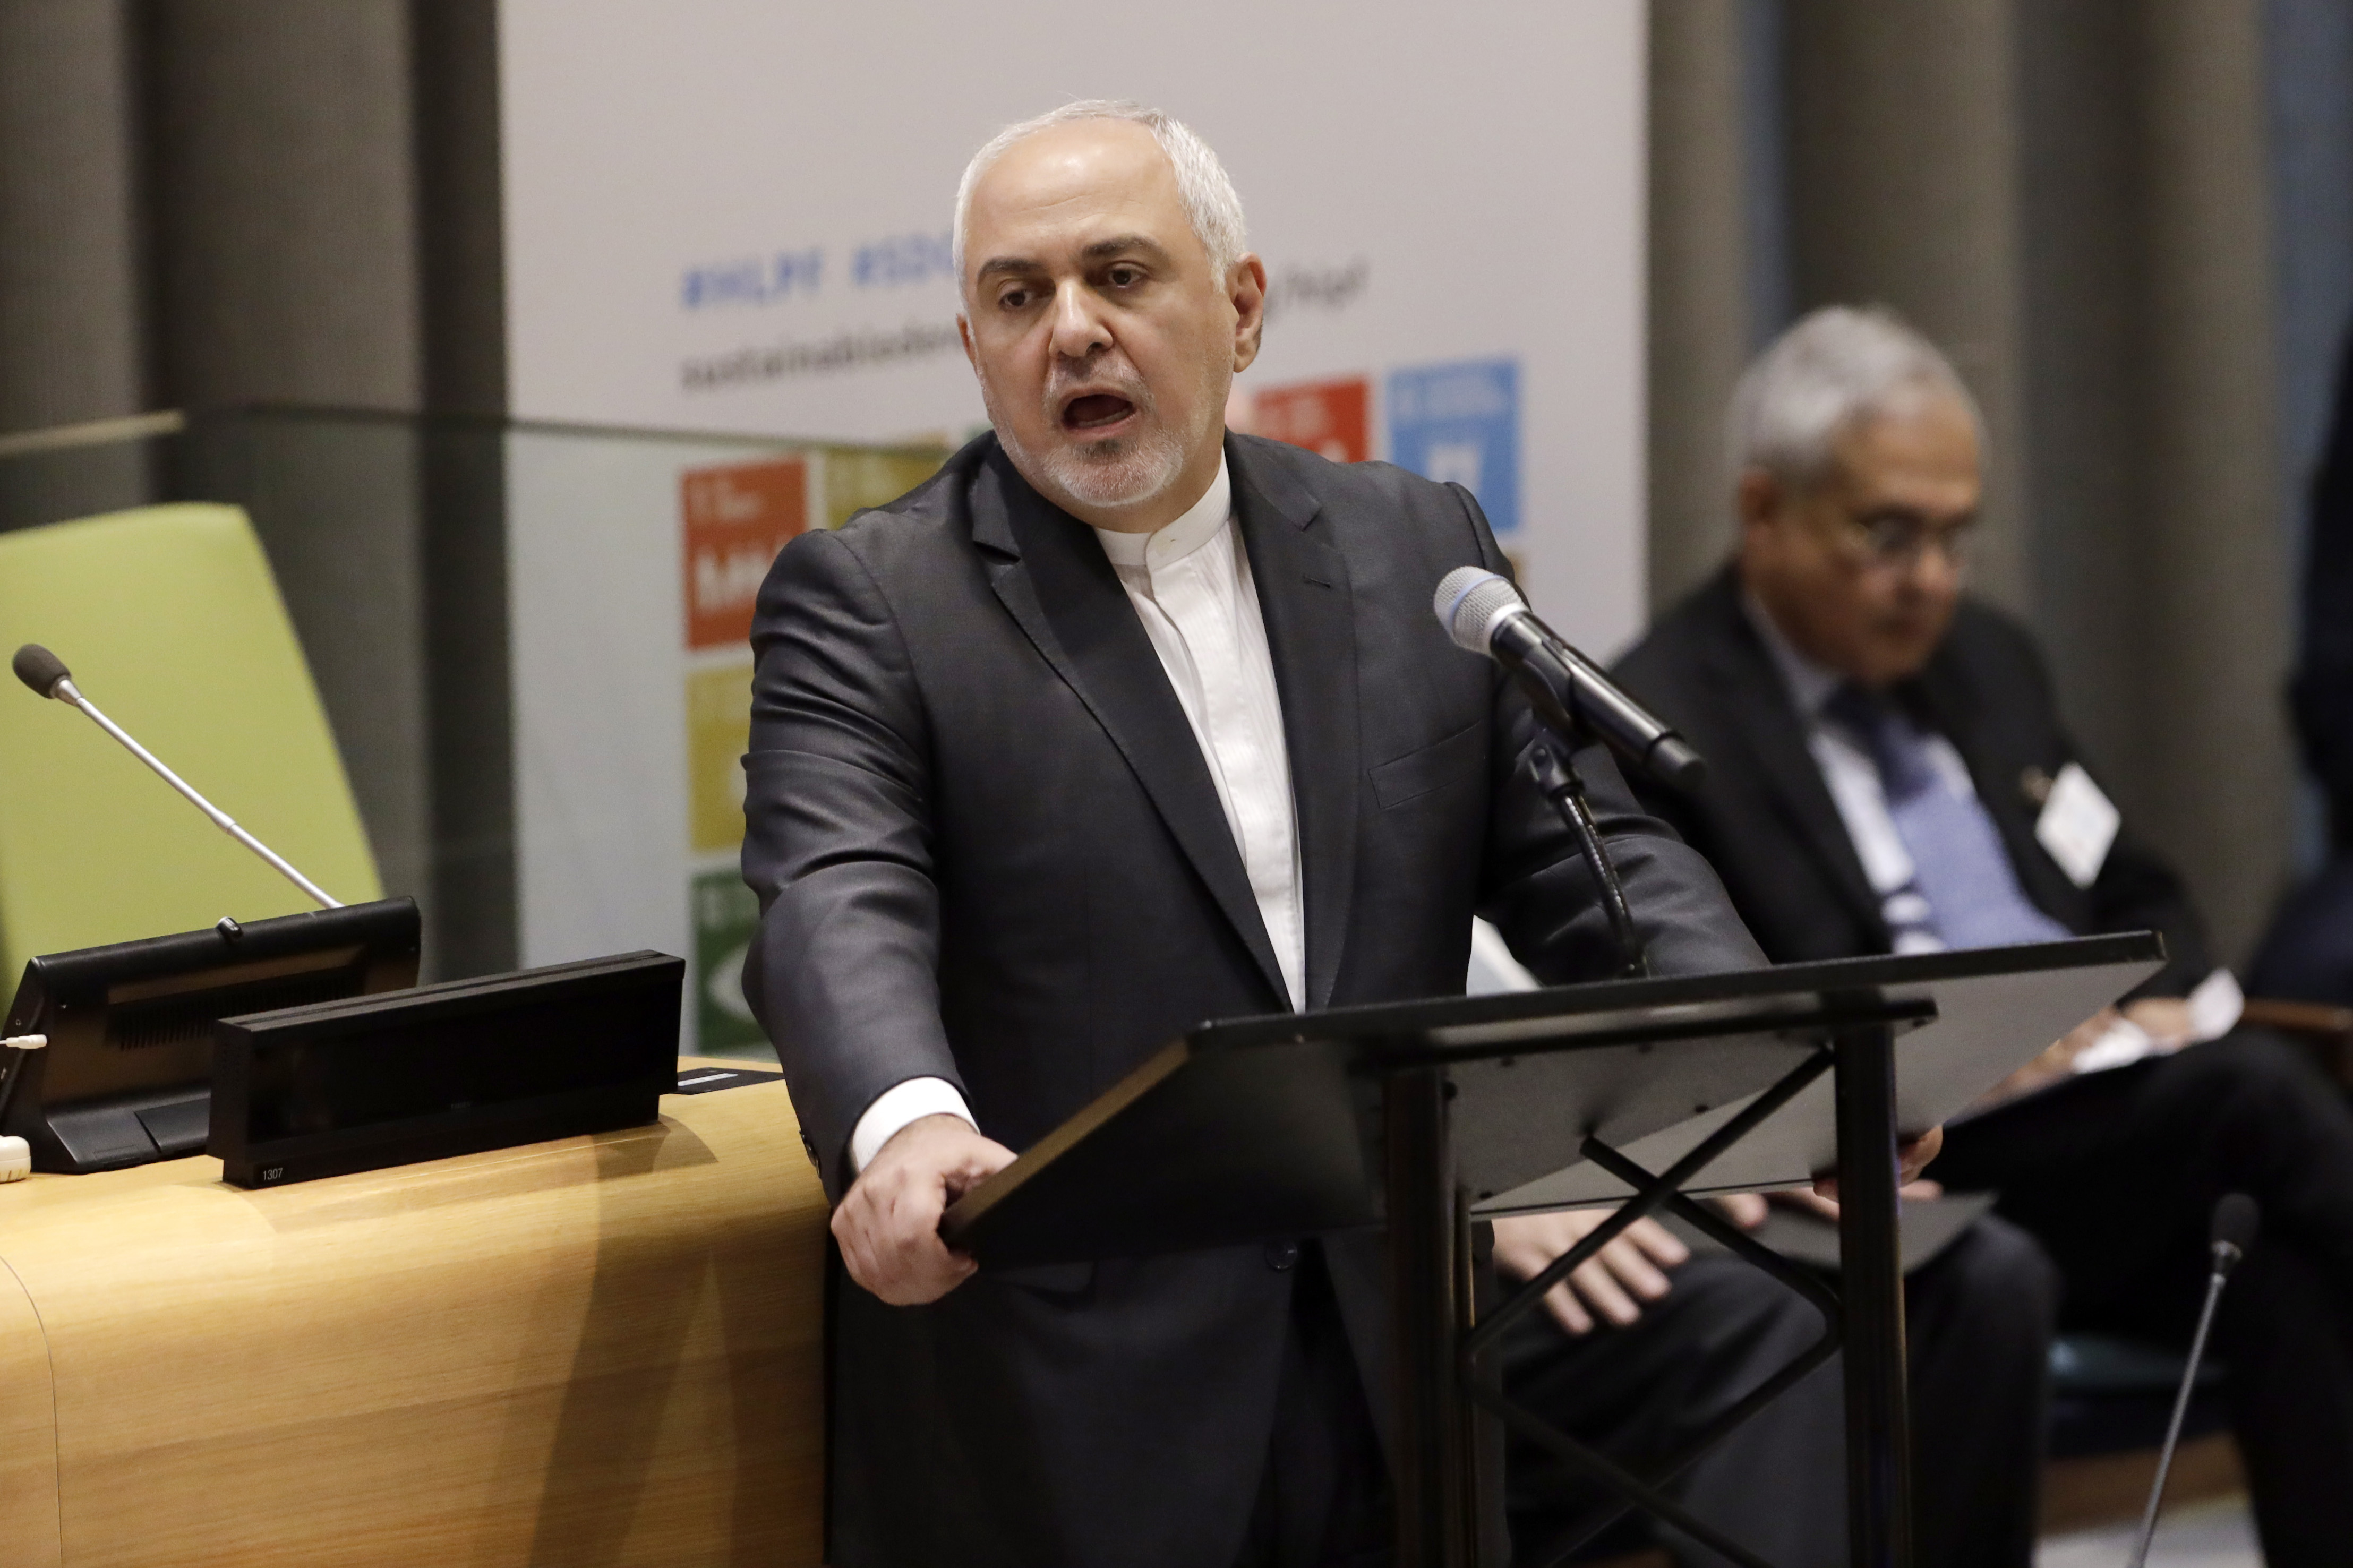 伊朗外长在联合国指责美国实施经济恐怖主义